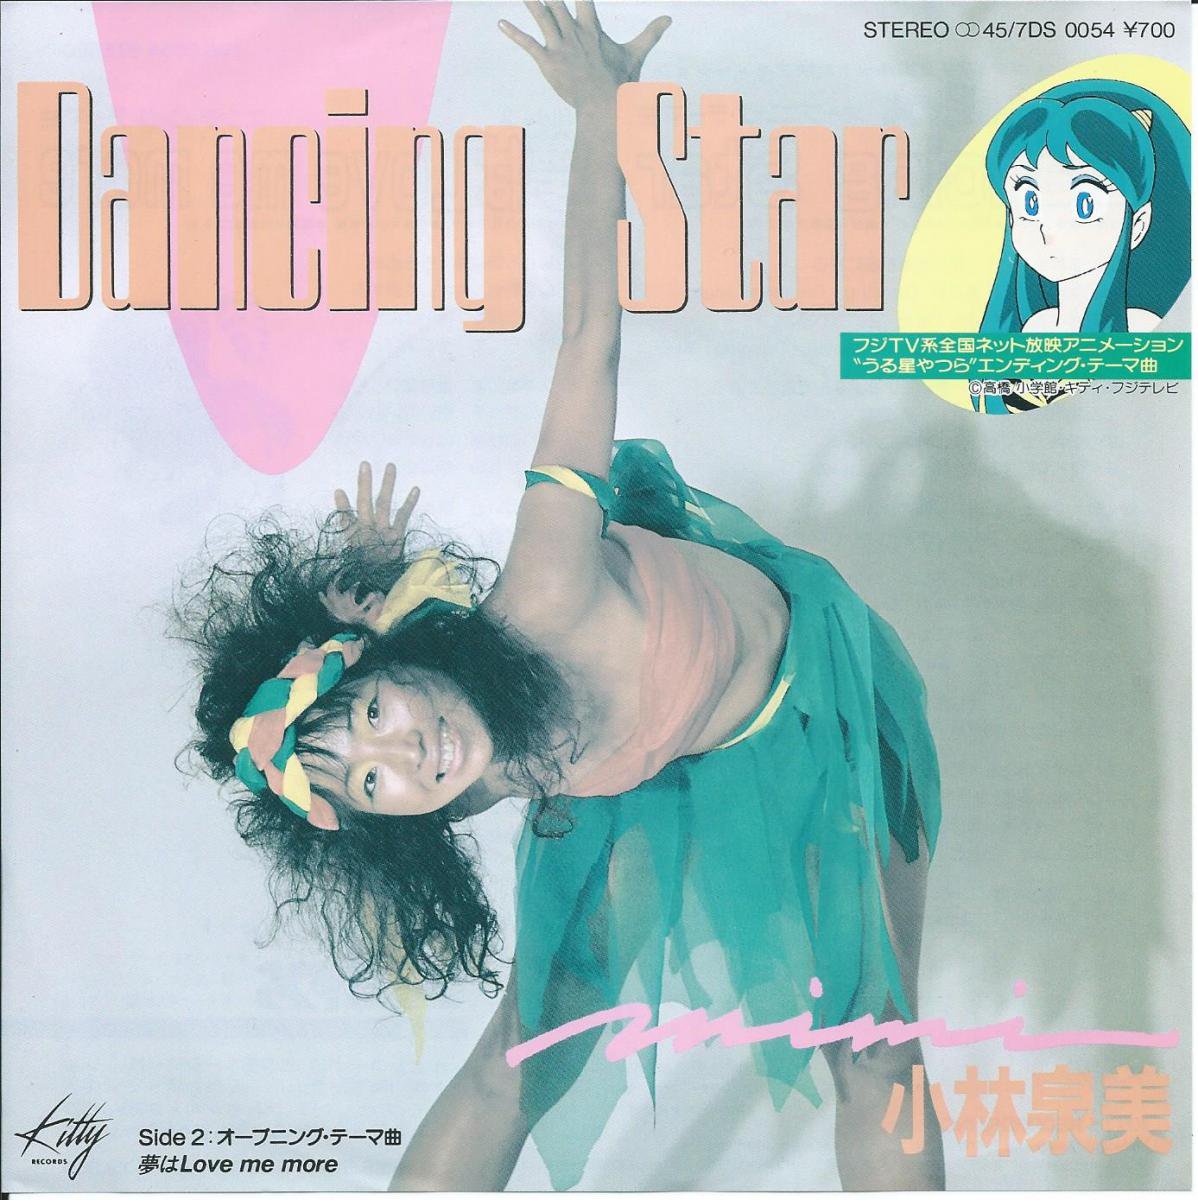 小林泉美 MIMI / DANCING STAR / 夢はLOVE ME MORE (うる星やつら) (7) - HIP TANK RECORDS